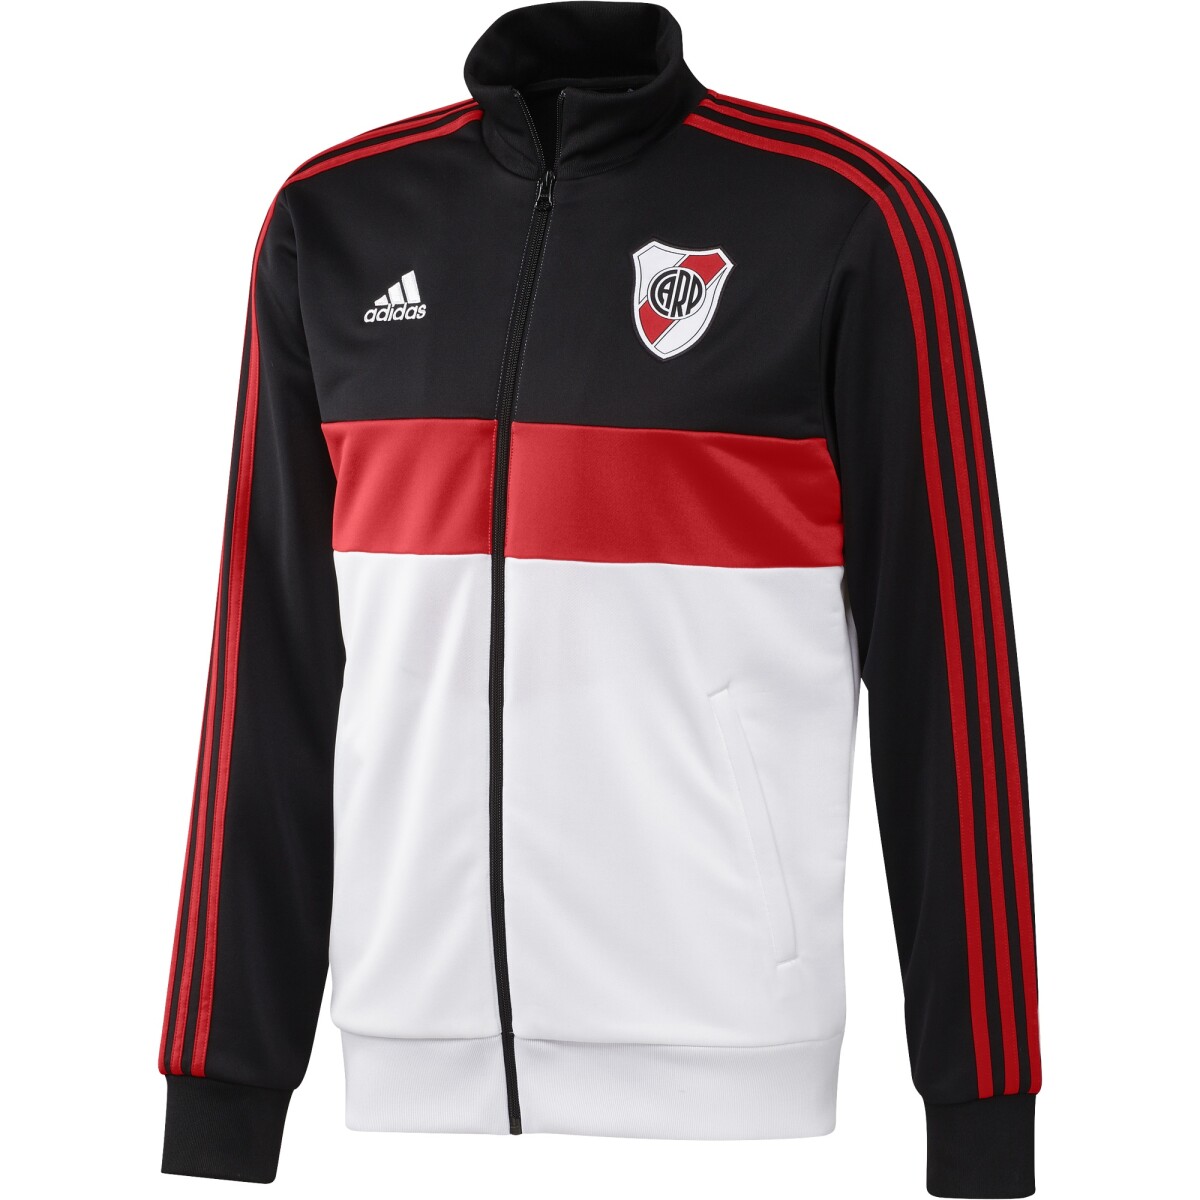 Campera Adidas Futbol Hombre River Plate 3S Trk Top - Color Único 